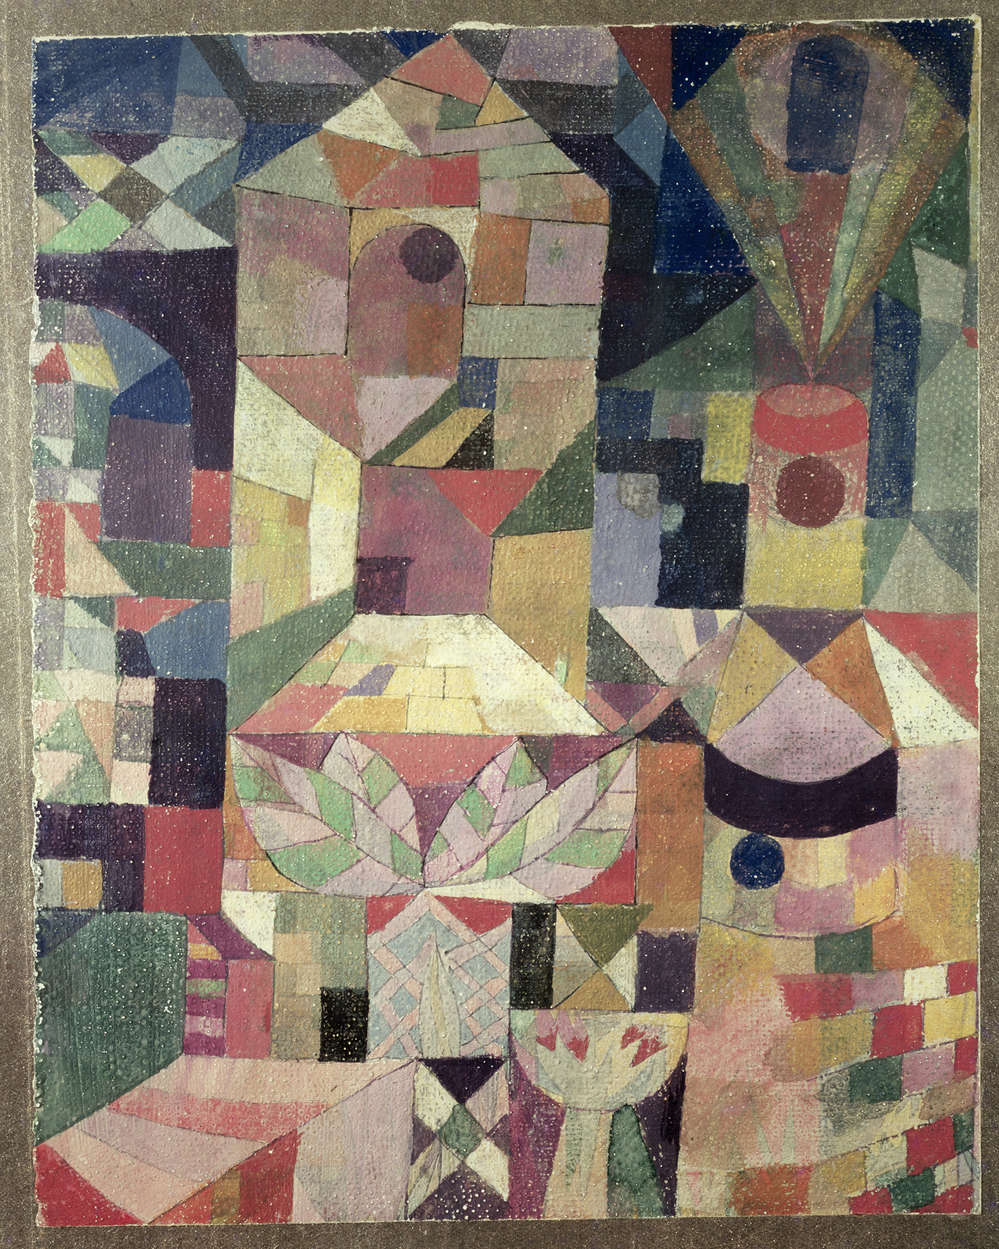             Muurschildering "Kasteeltuin" van Paul Klee
        